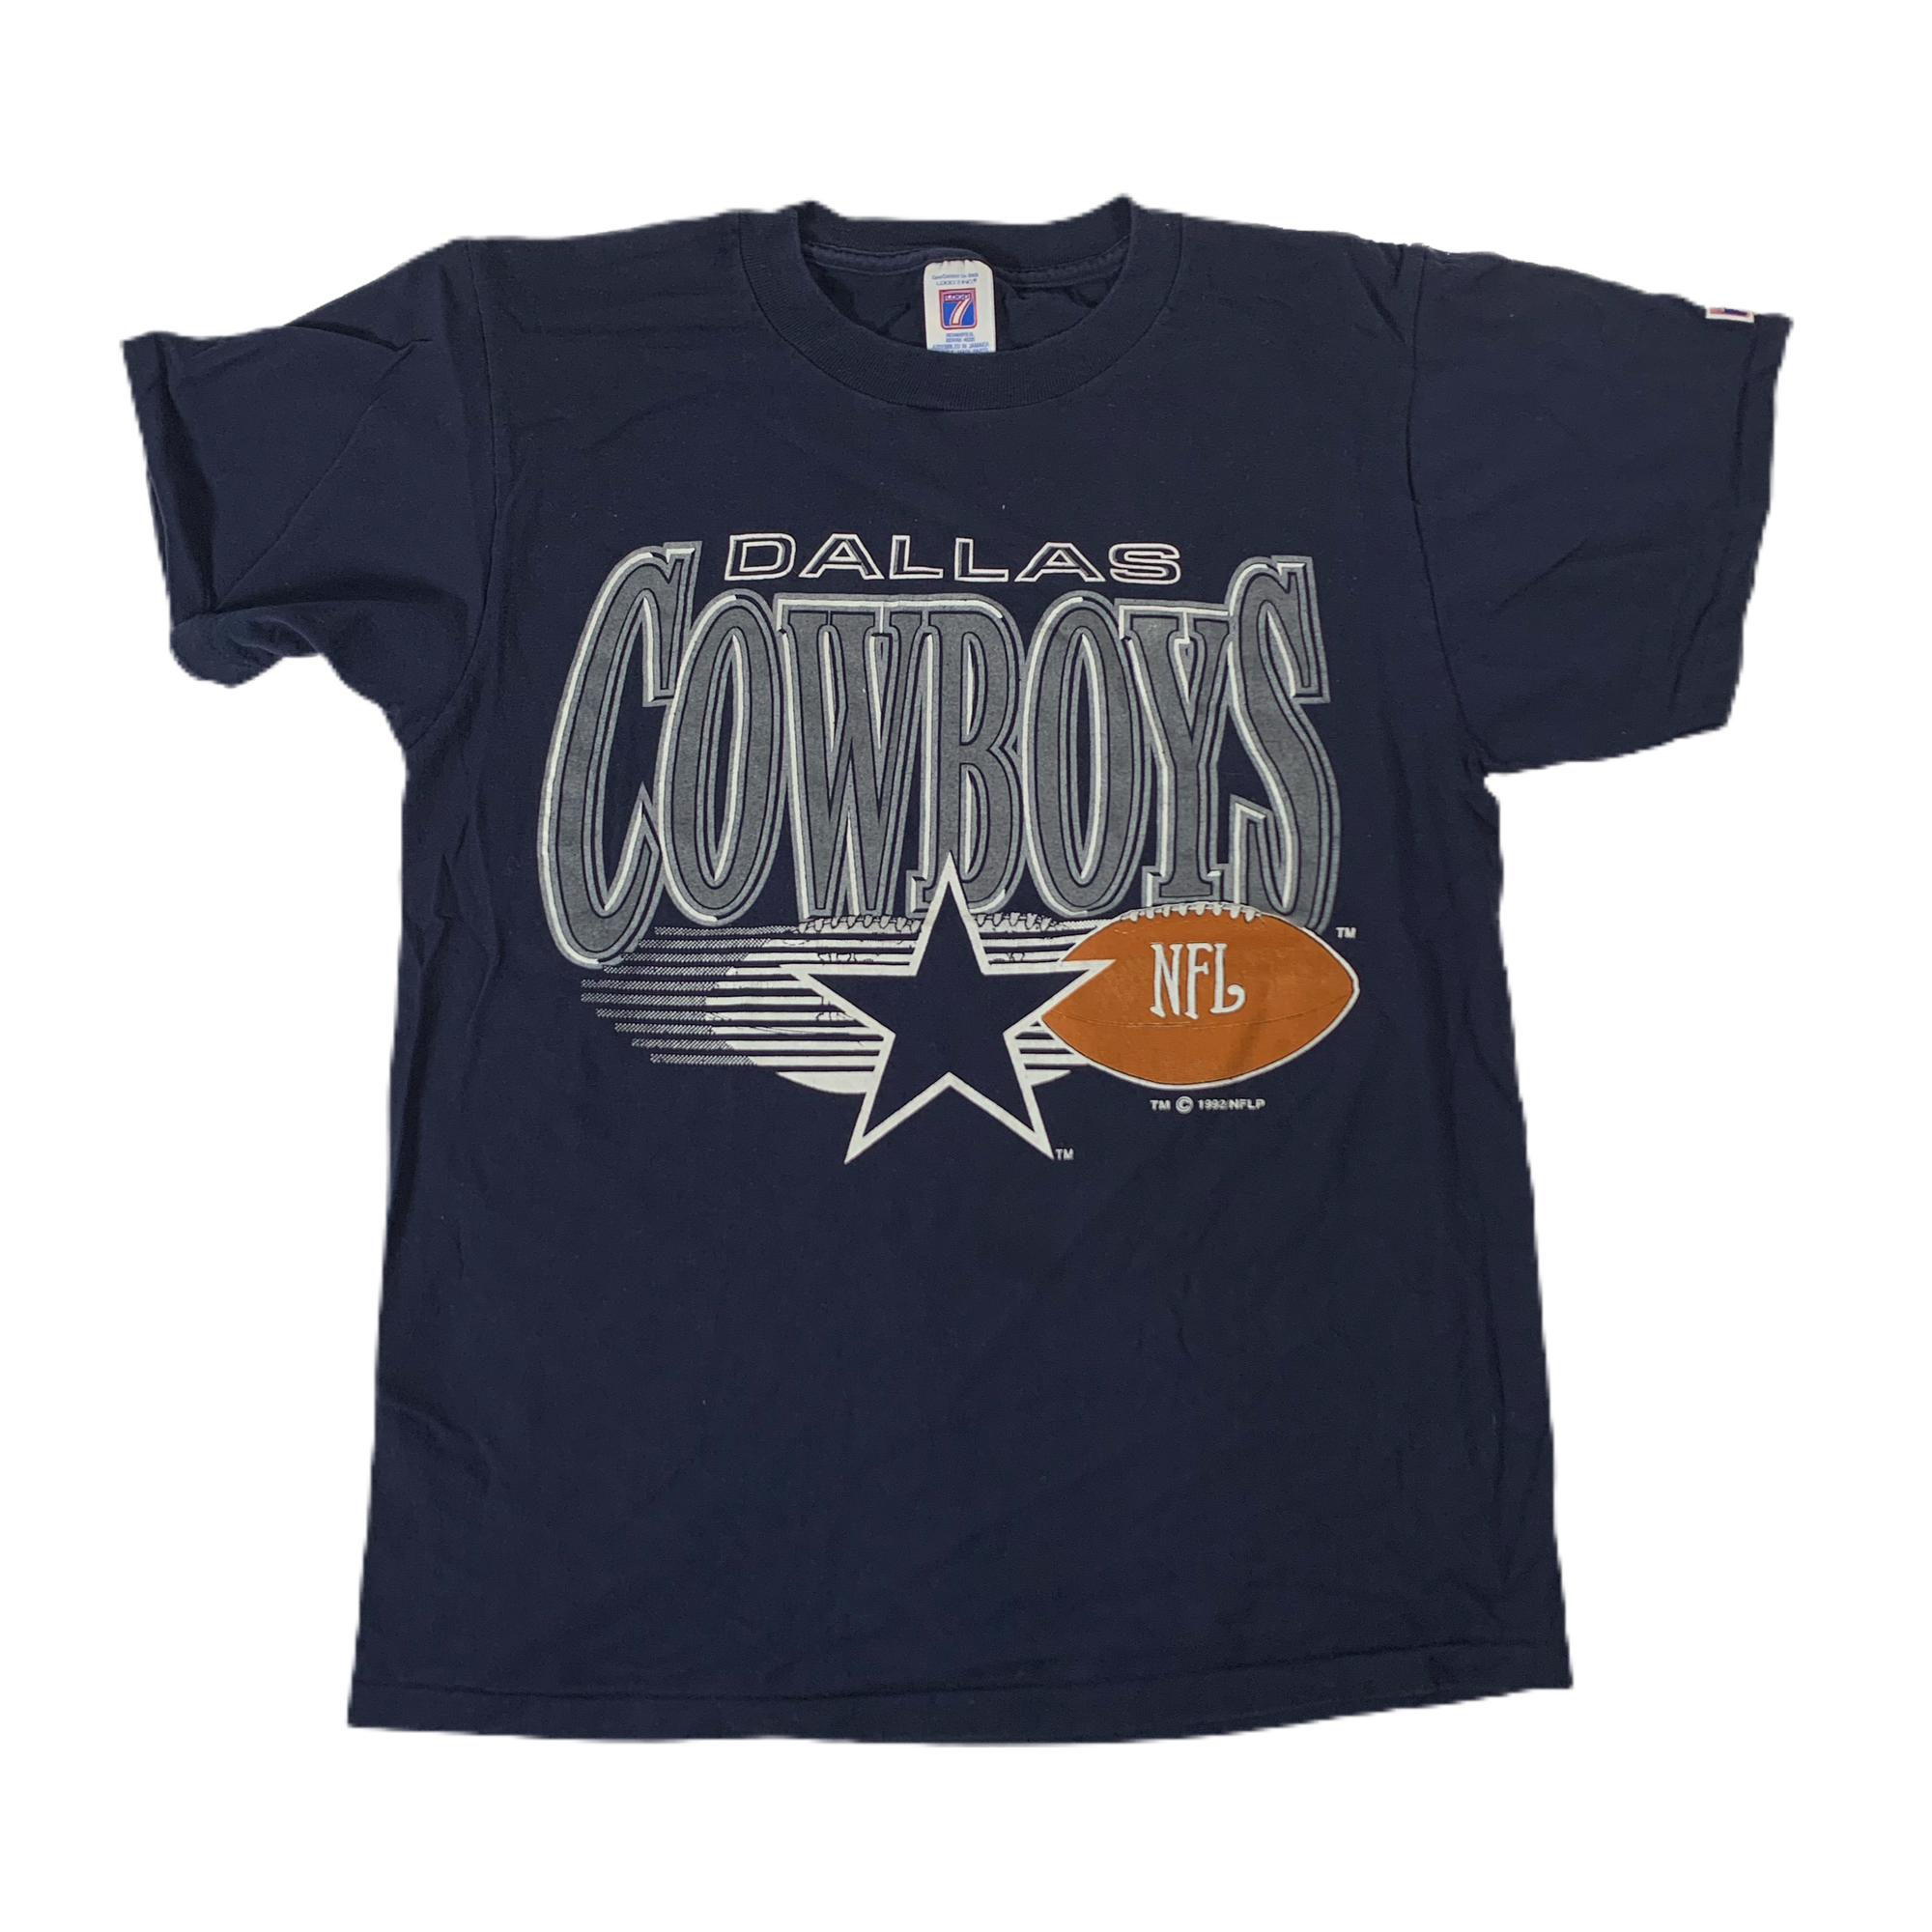 Vintage Dallas Cowboys “Logo 7” T-Shirt - jointcustodydc